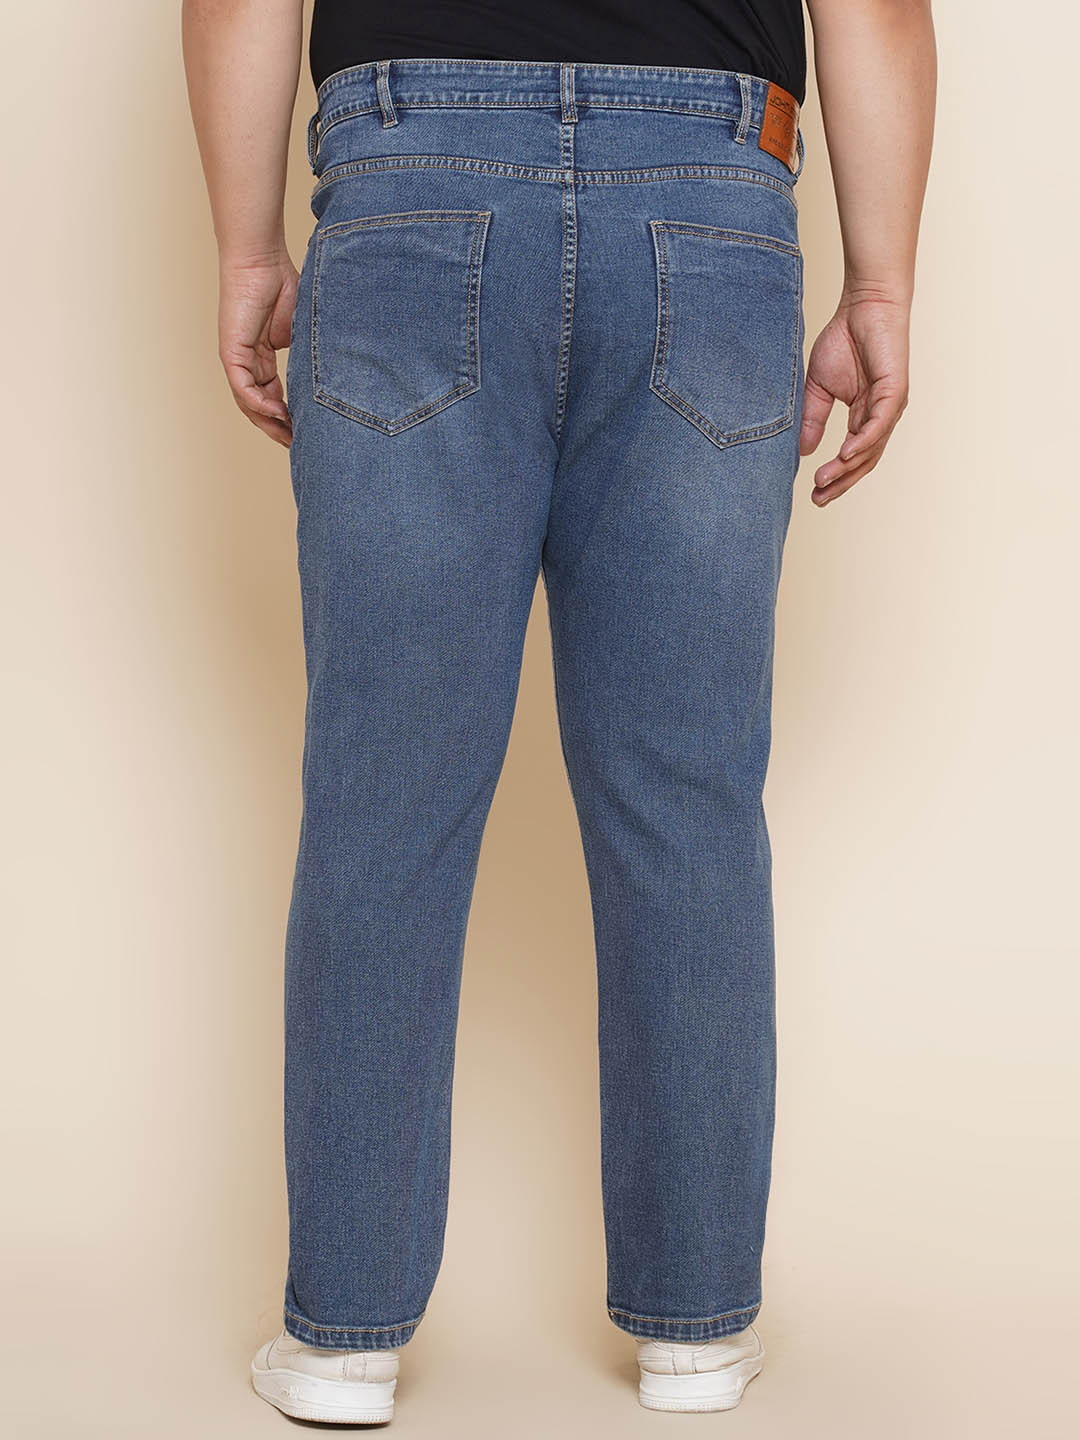 bottomwear/jeans/JPJ270125/jpj270125-5.jpg